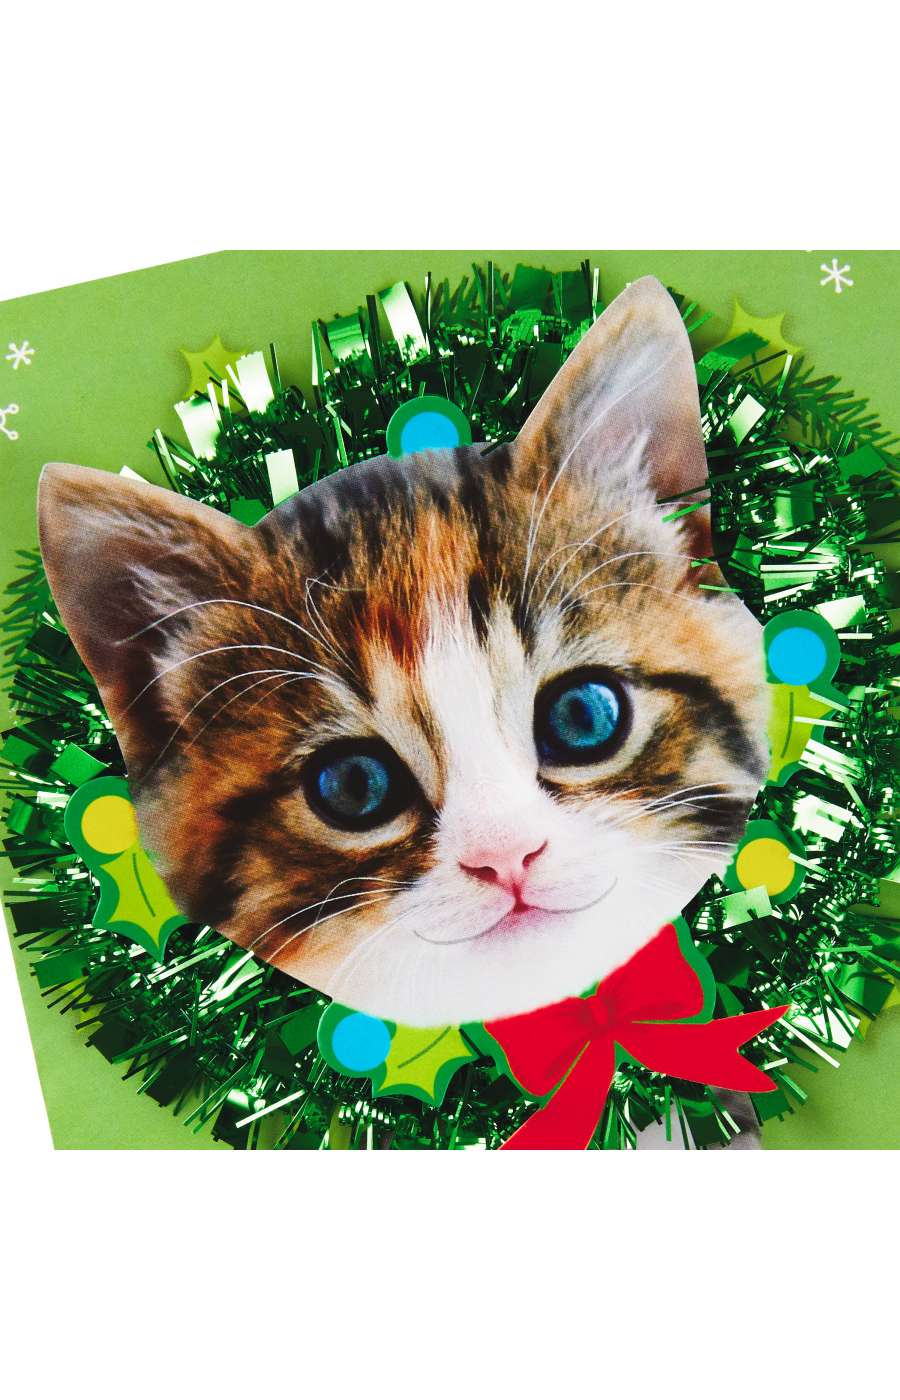 Hallmark Cats Musical Christmas Card (O Christmas Tree) - S15, S31; image 4 of 6